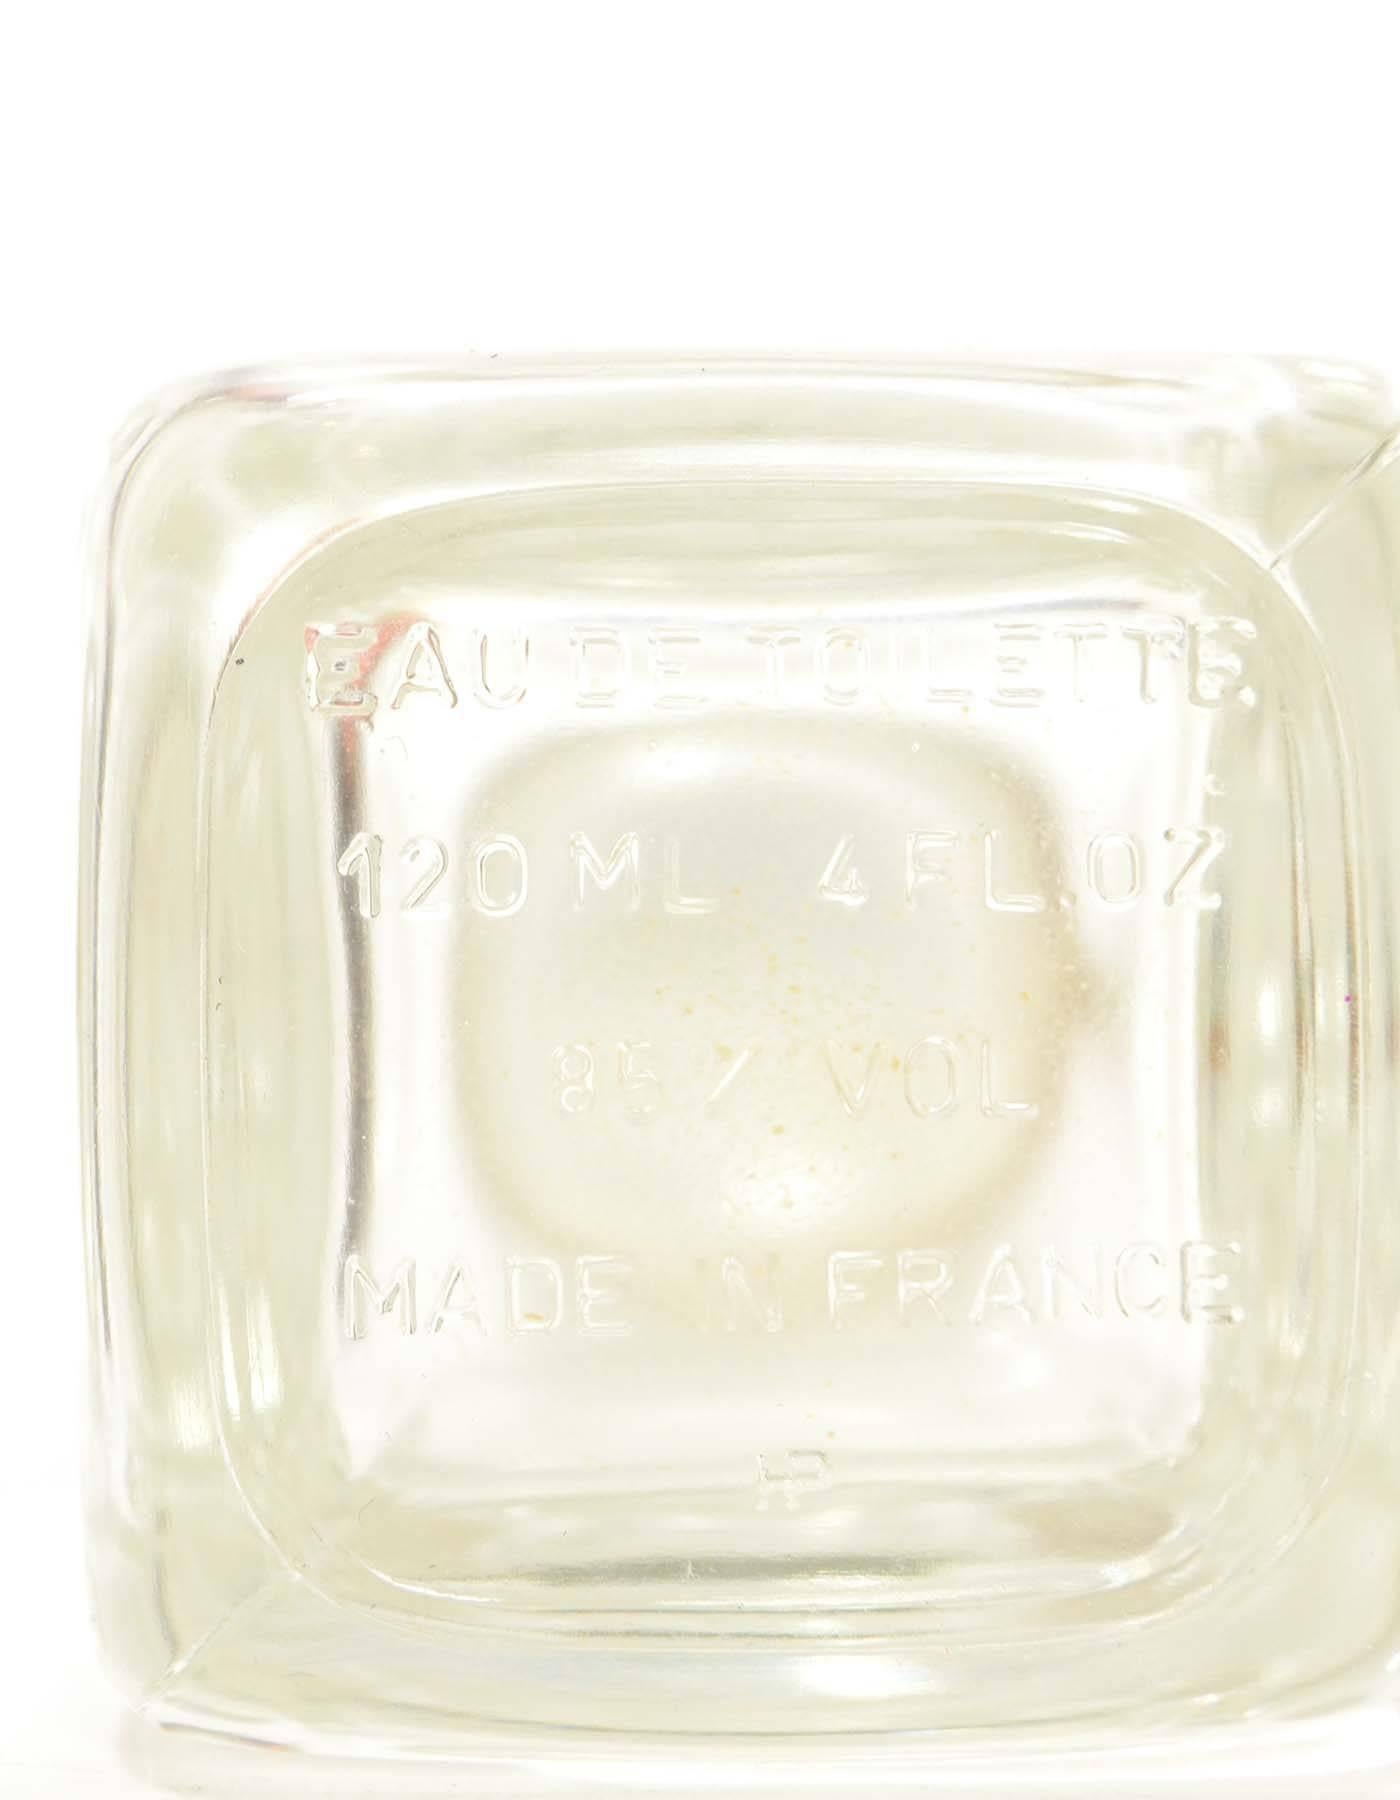 White Hermes Ltd Ed. Clear Glass Eau D'Hermes 1995 Perfume Bottle